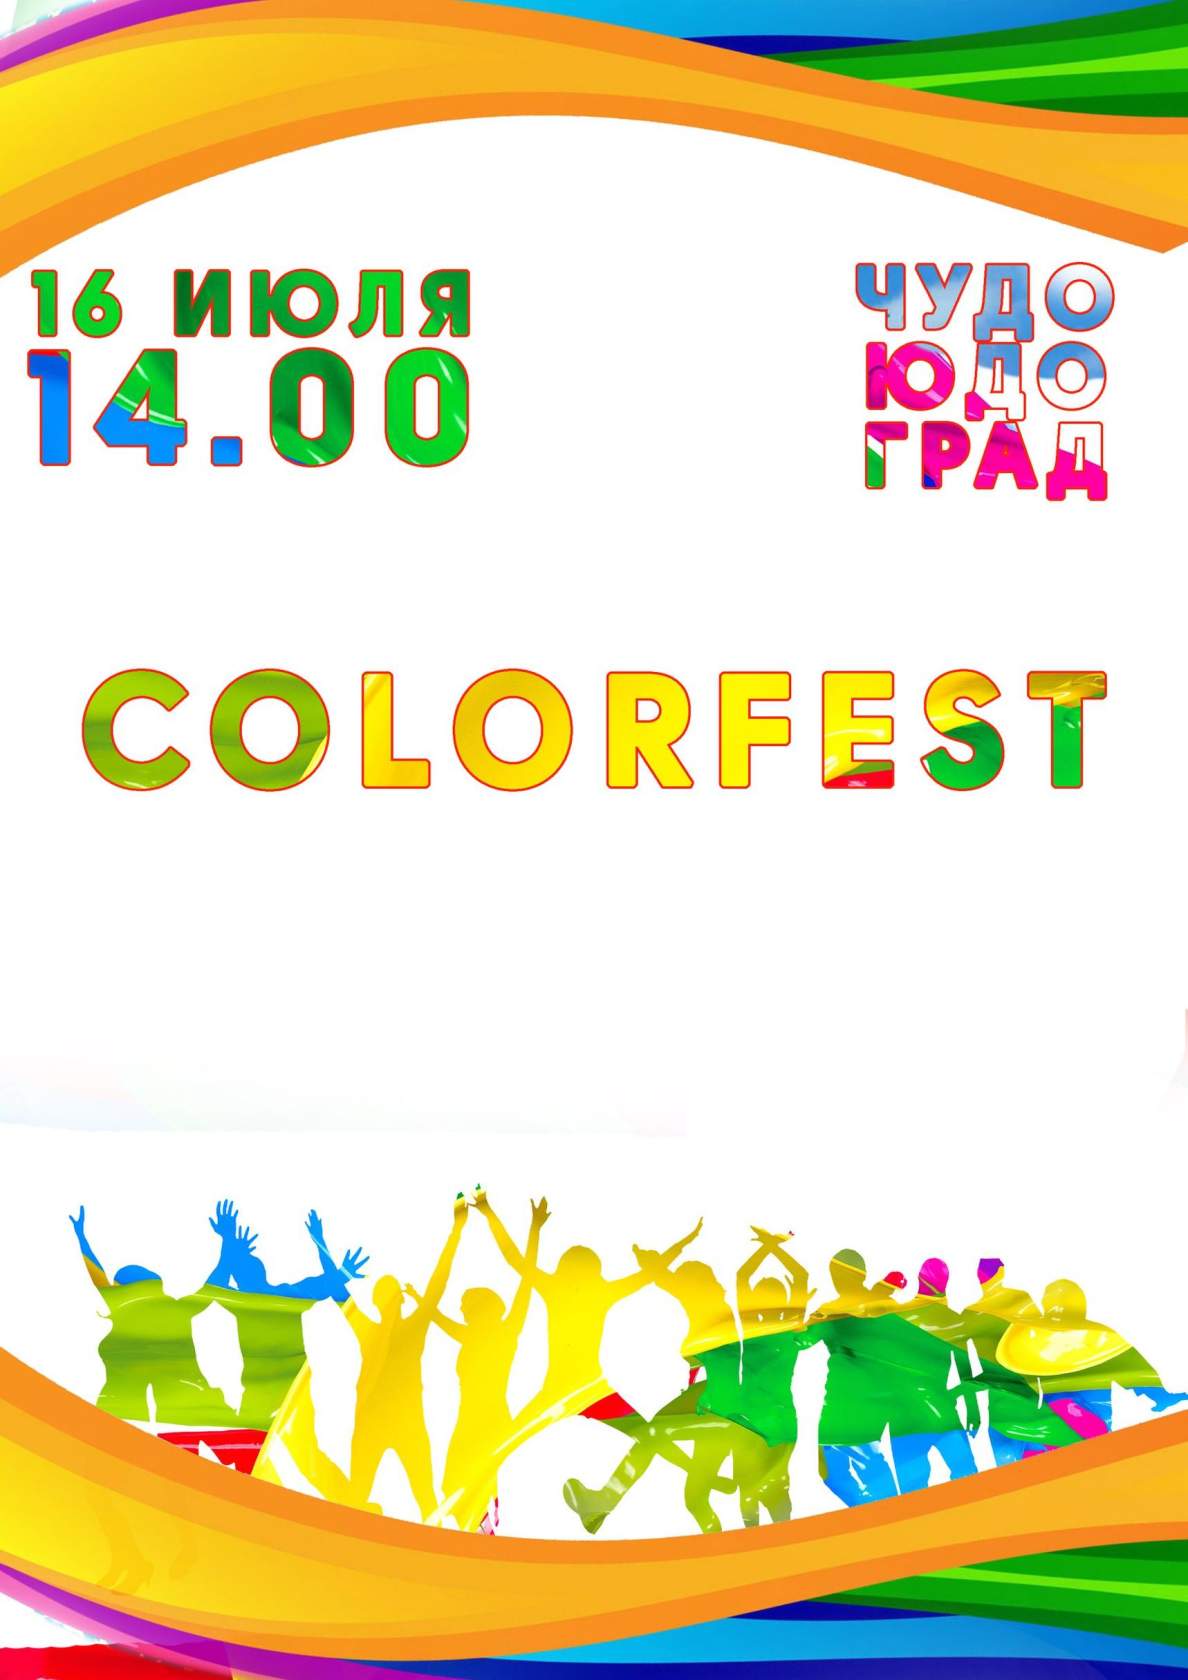 Colorfest